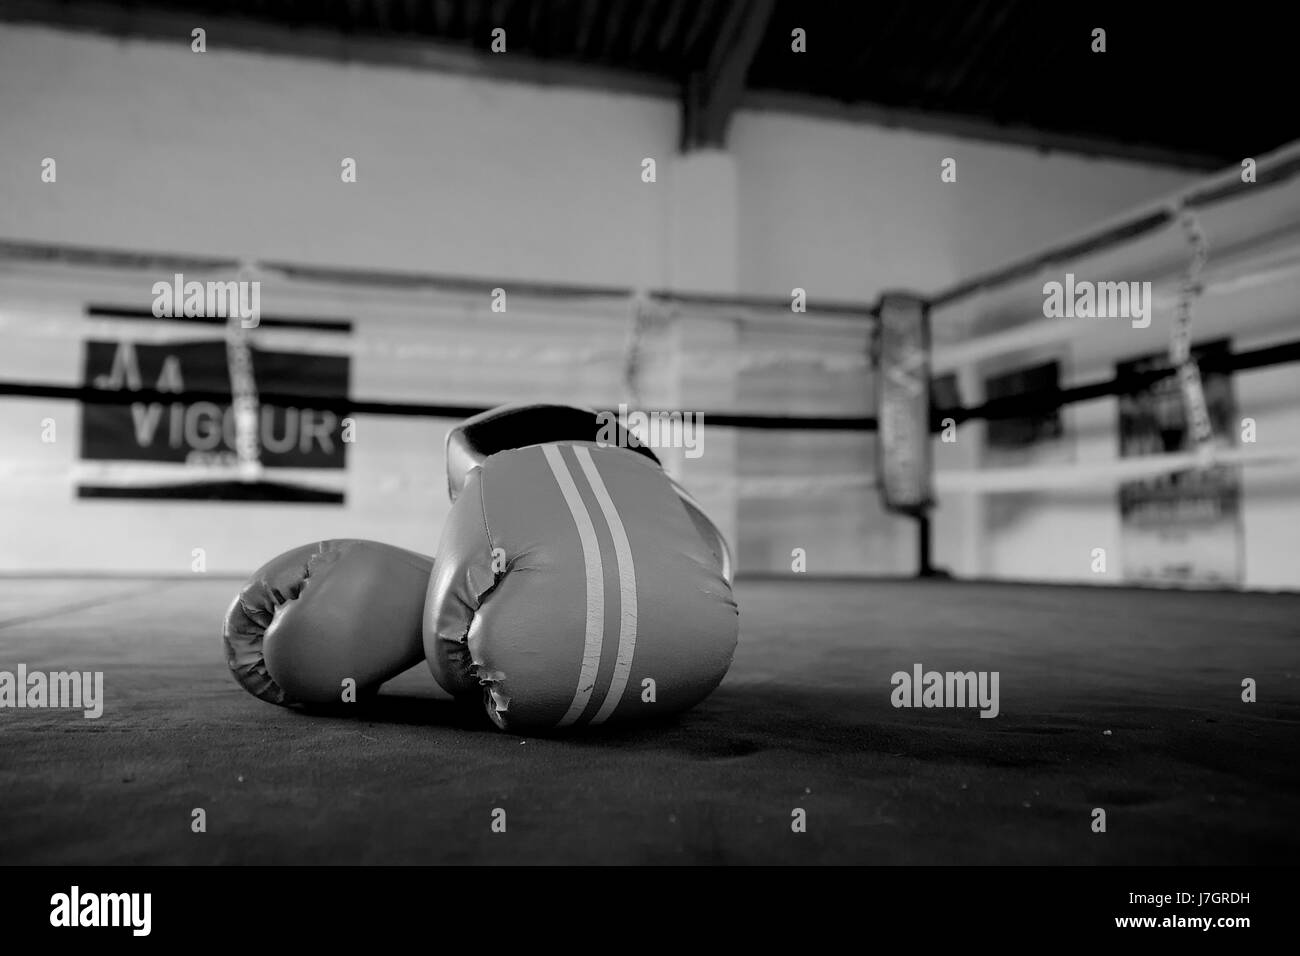 Des gants de boxe sur la toile d'un ring de boxe dans une salle de sport Banque D'Images